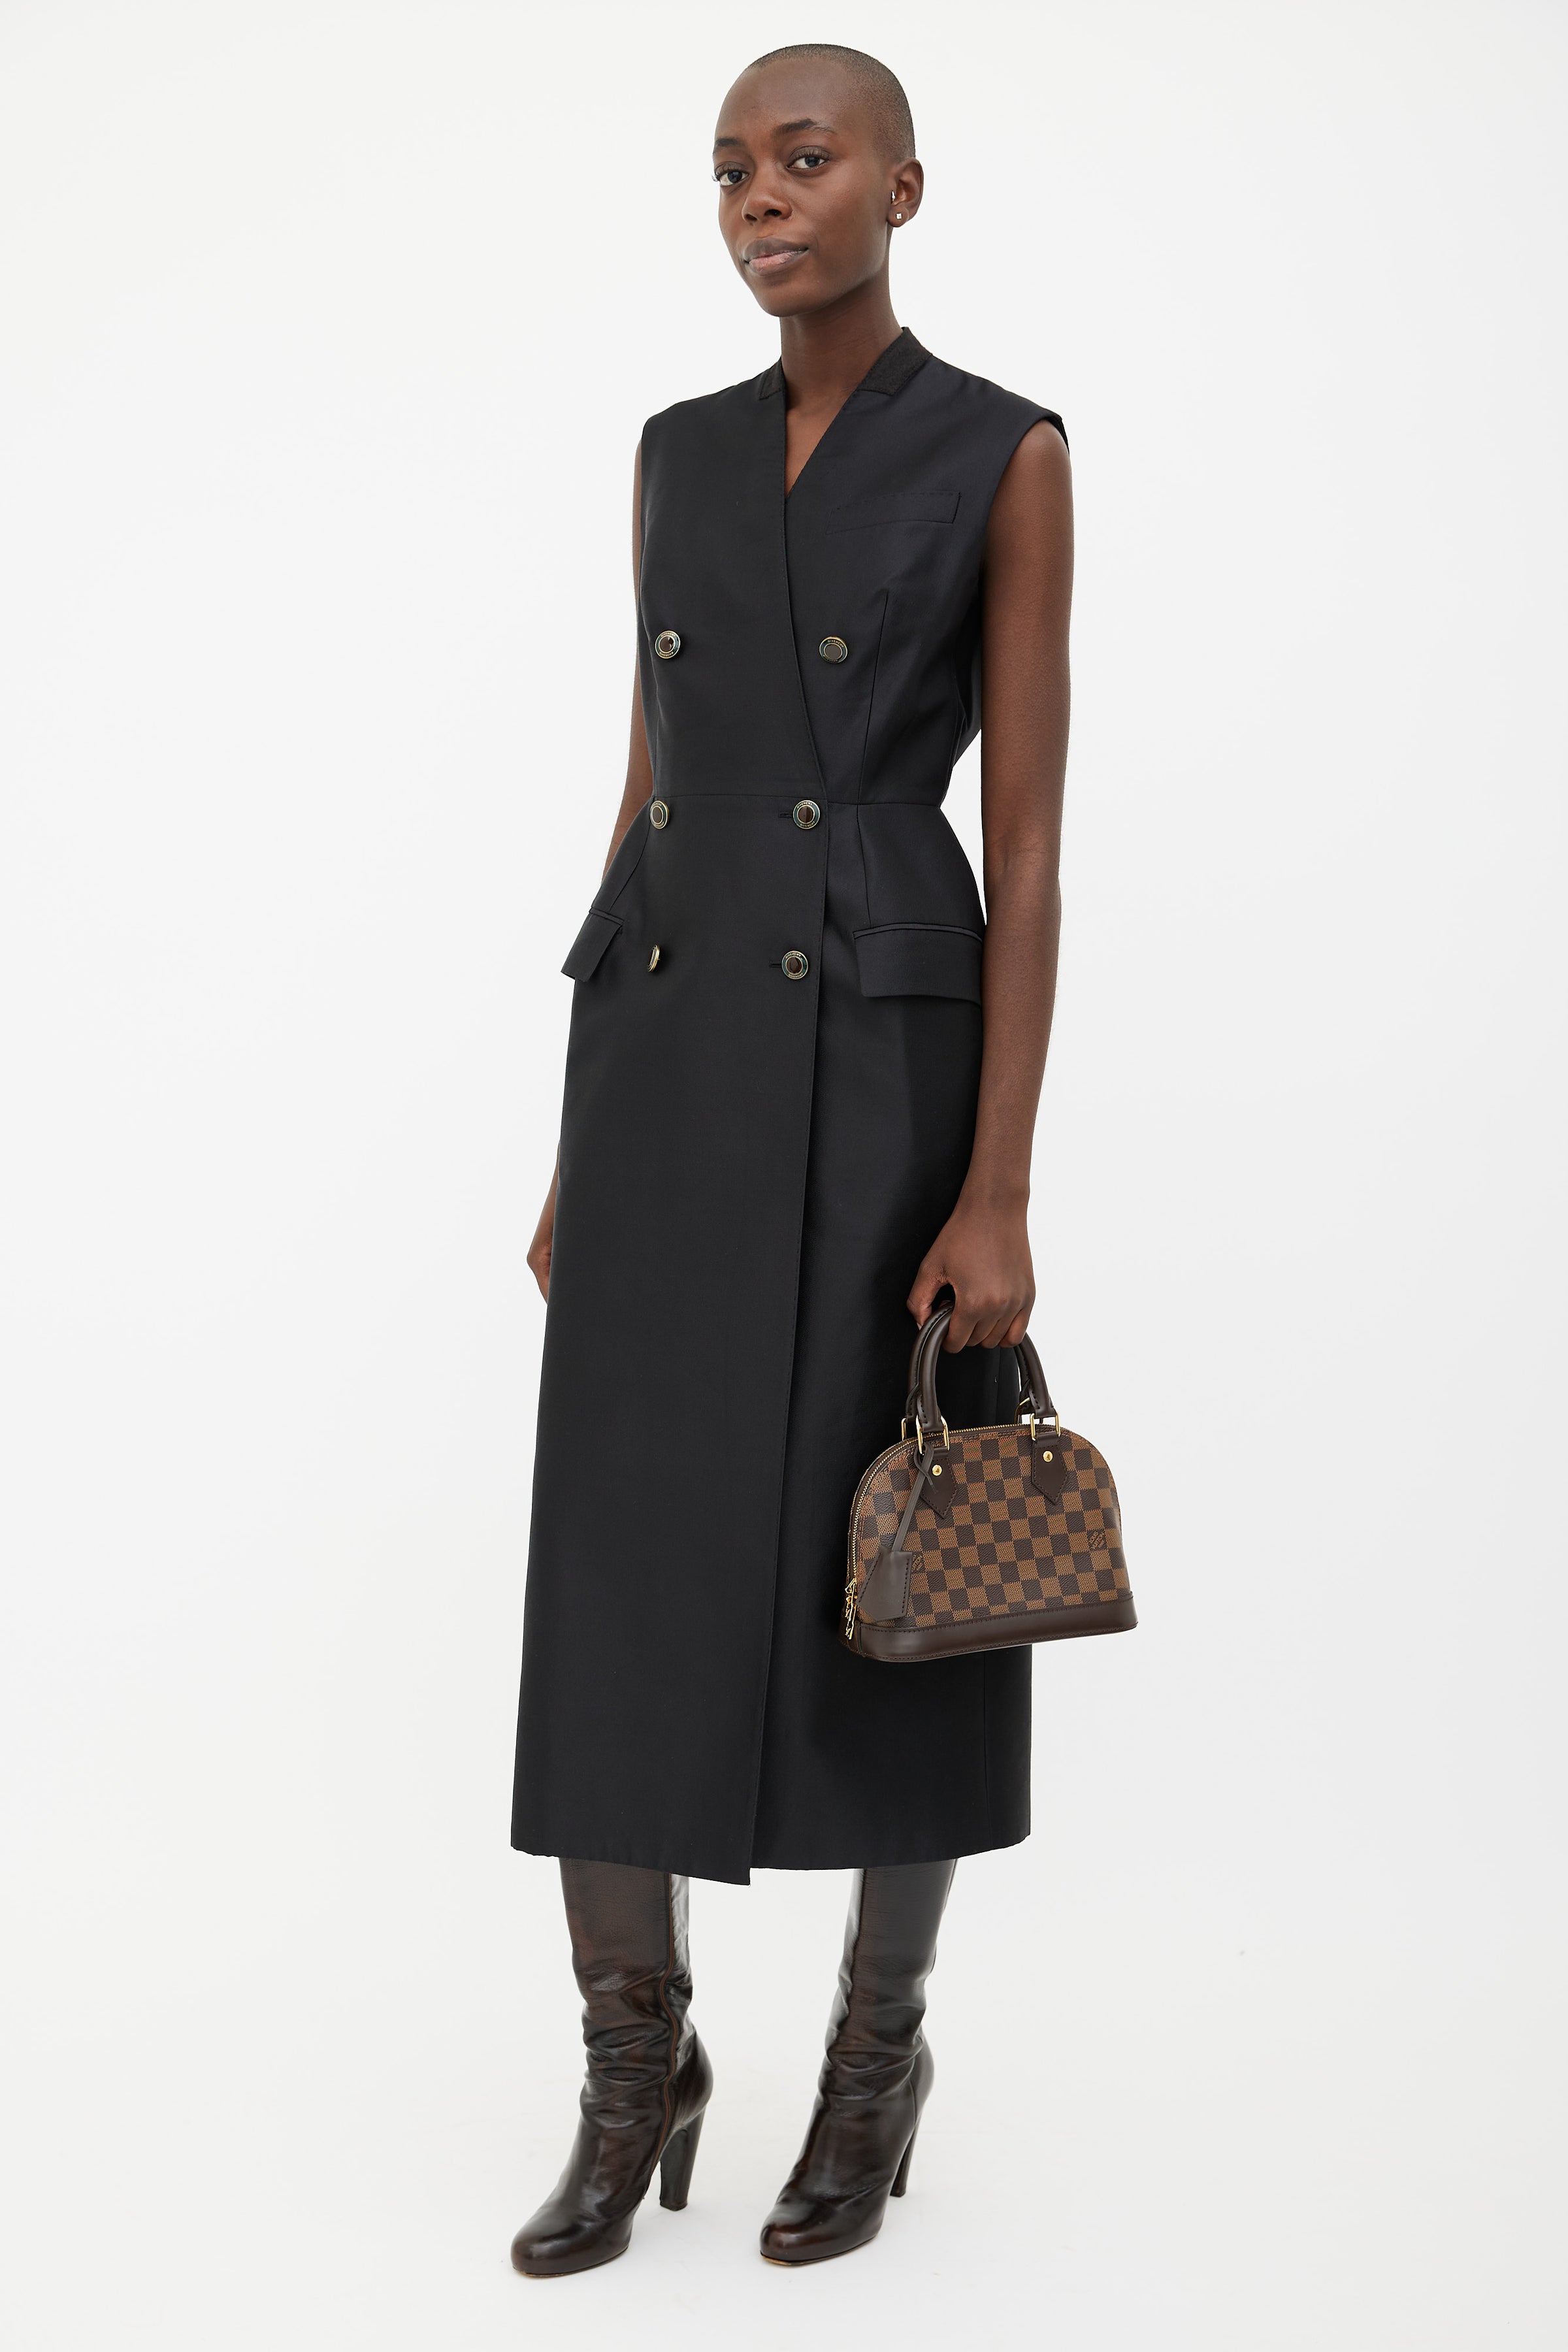 Louis Vuitton 2019 pre-owned Damier Ebène Alma BB two-way Bag